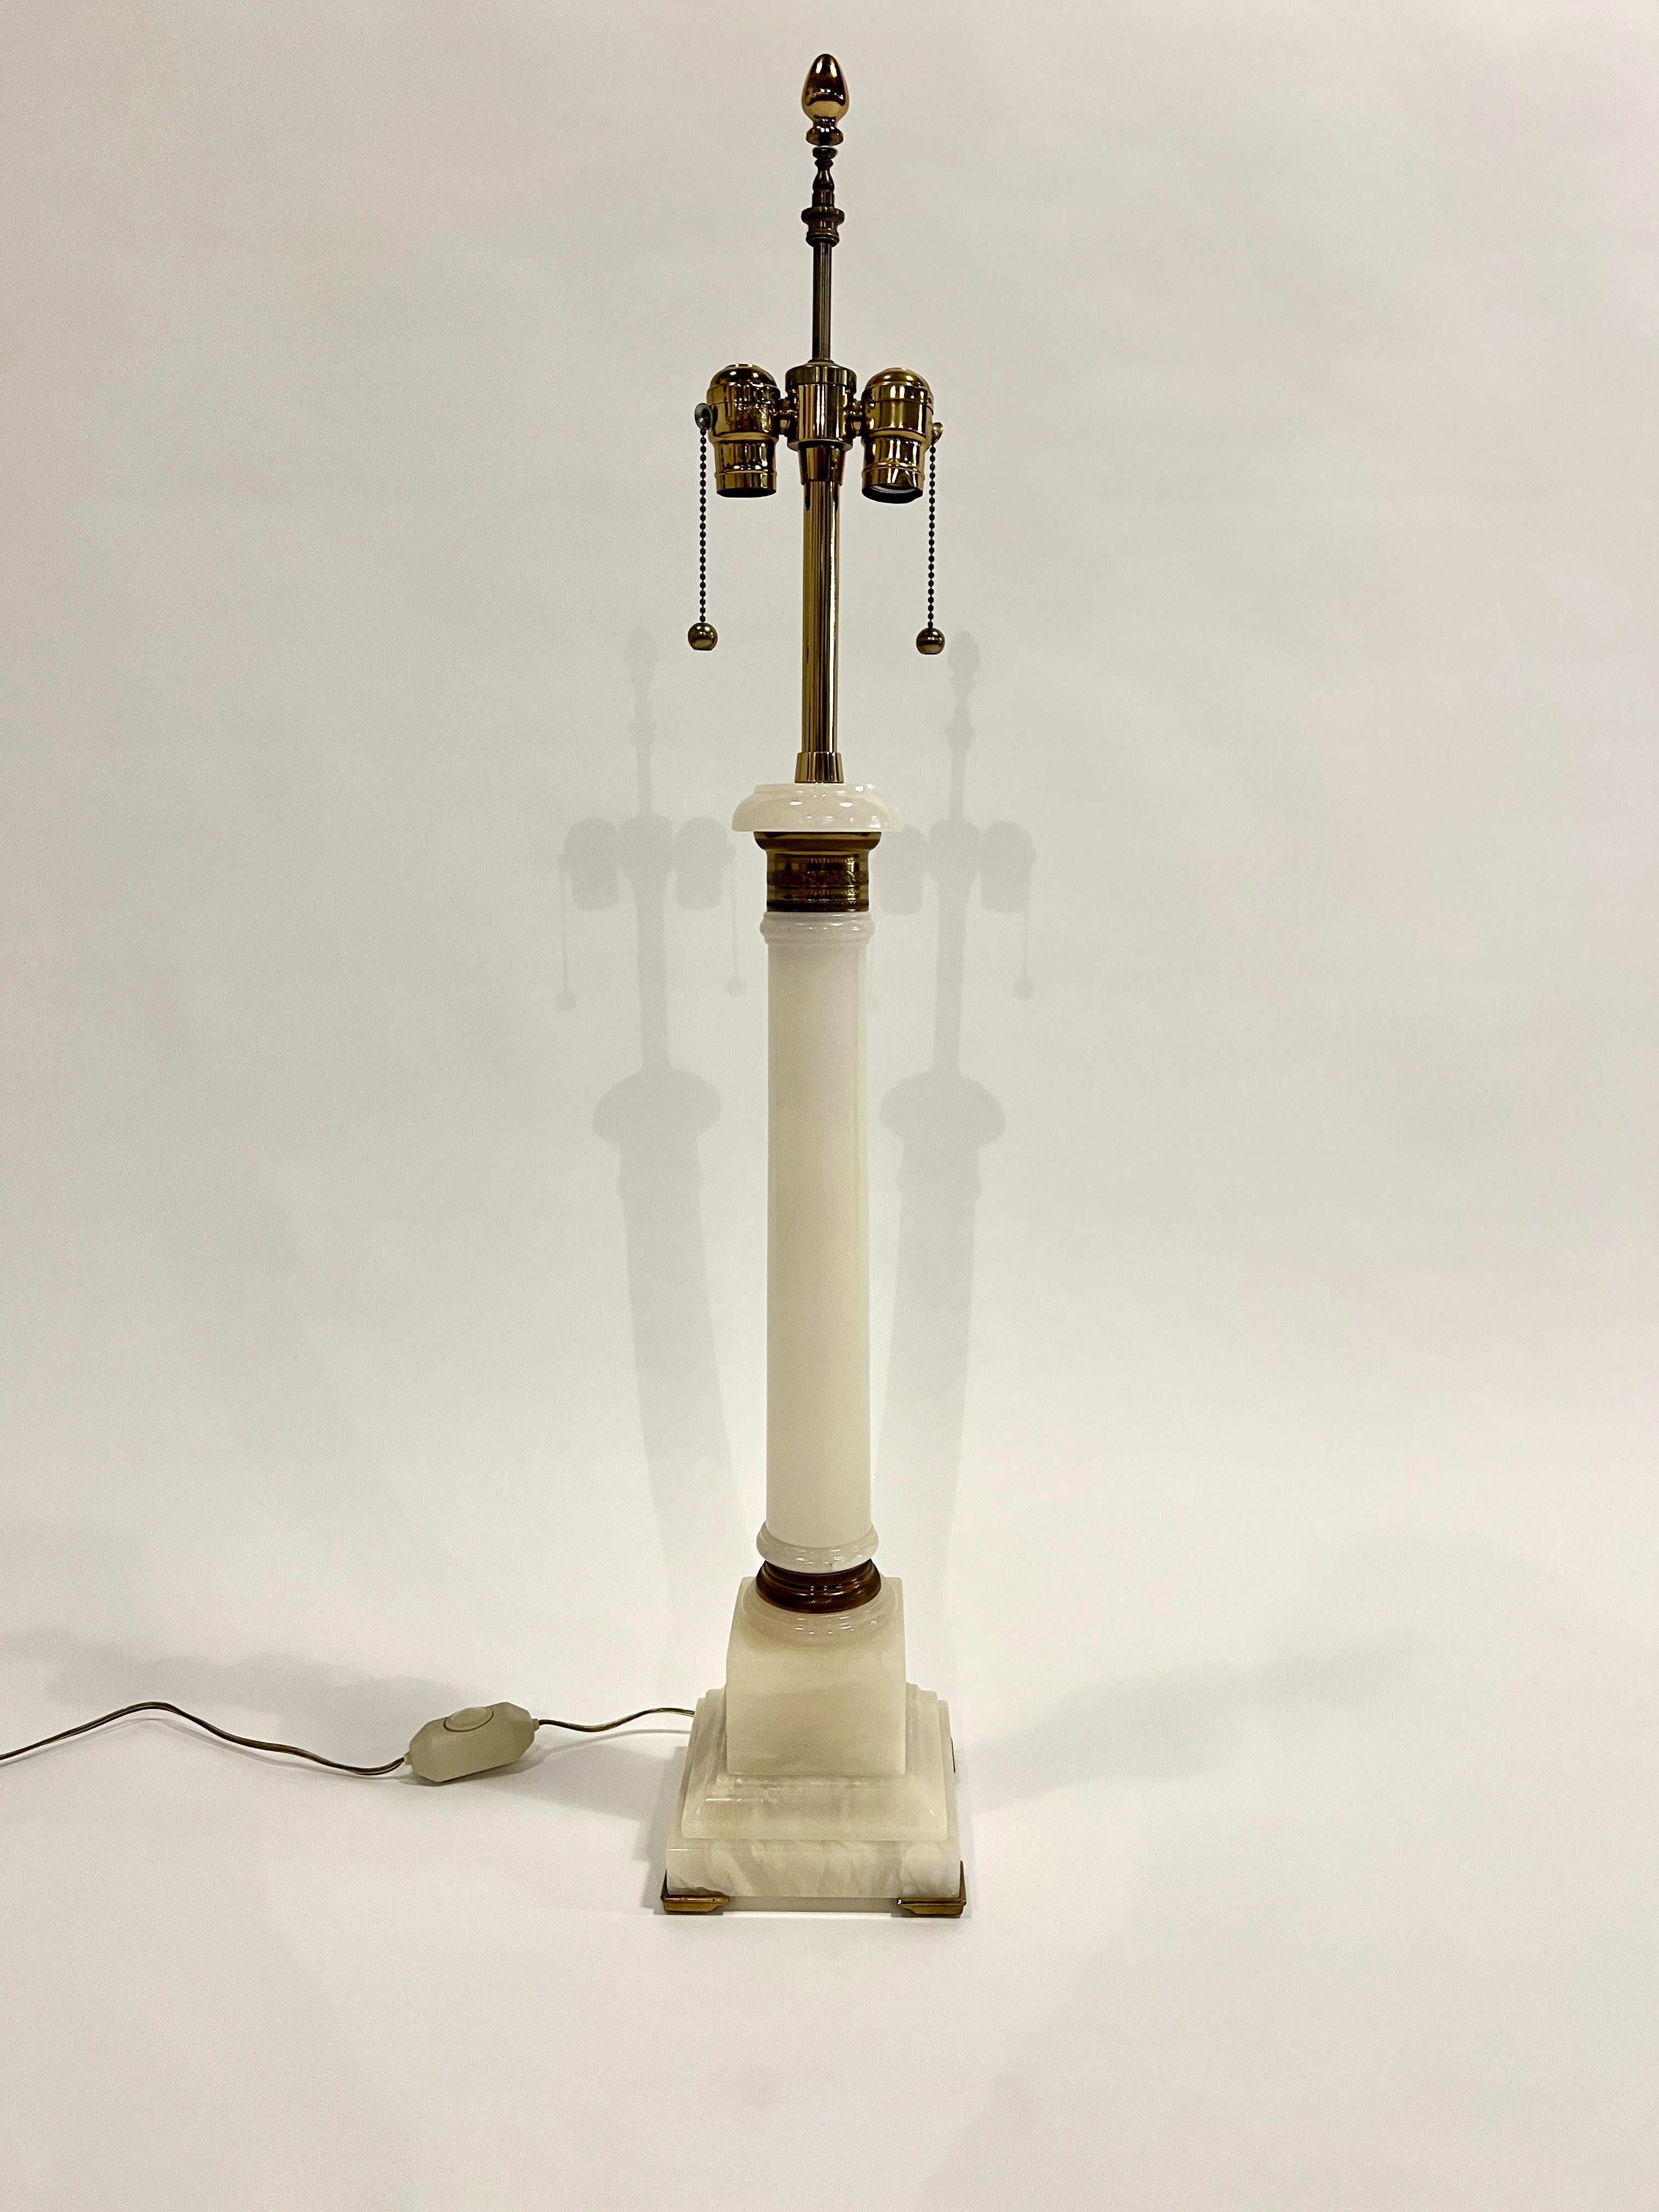 Hohe klassische Säulenlampe aus Alabaster mit Messingakzenten, zugeschrieben der Marbo Lamp Co. Mit original seidengefüttertem Schirm und Messingknauf. 